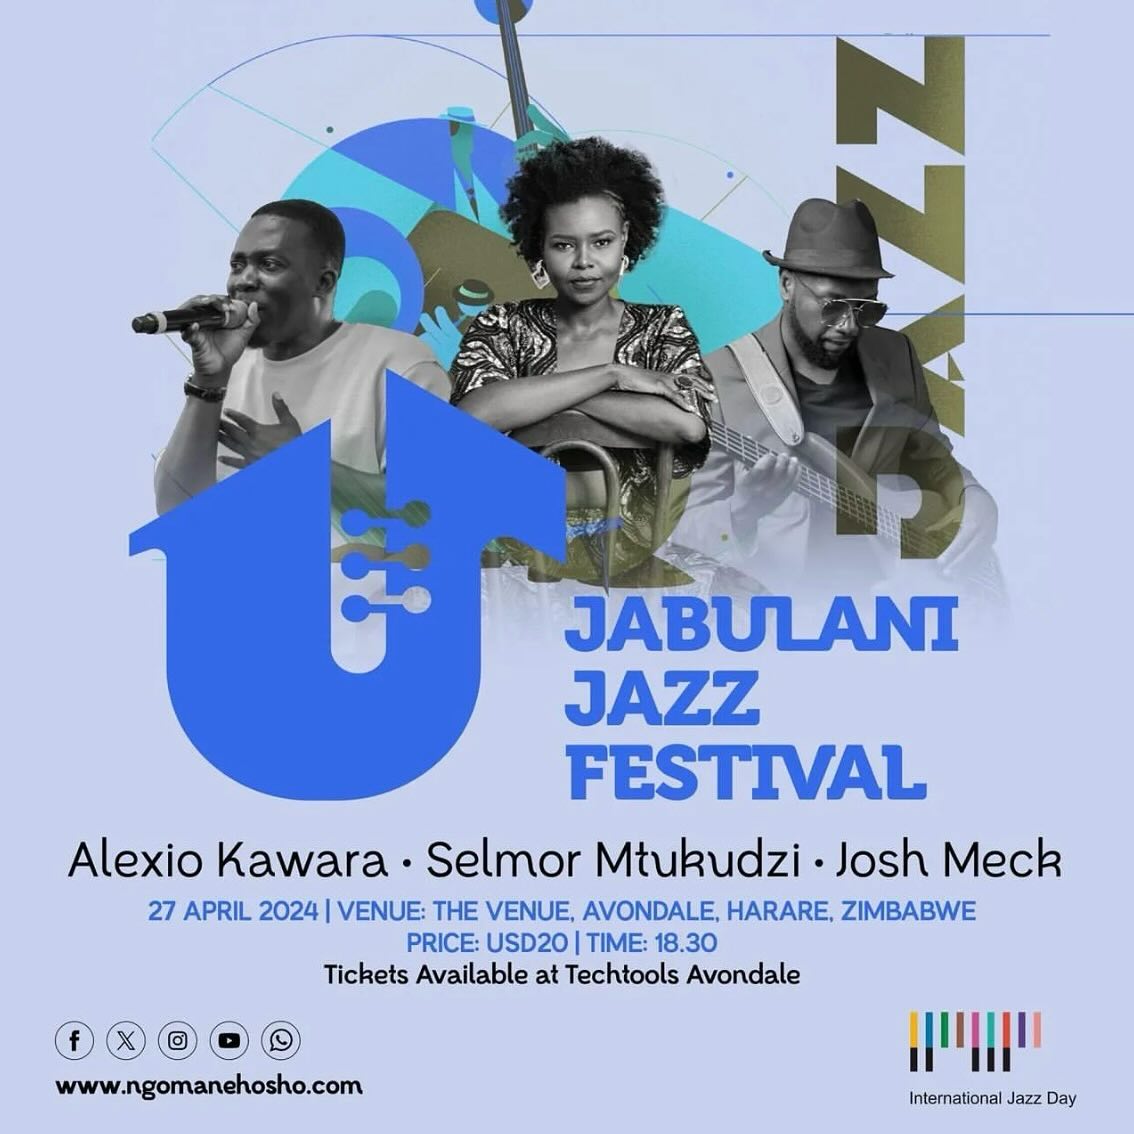 Jabulani Jazz Festival